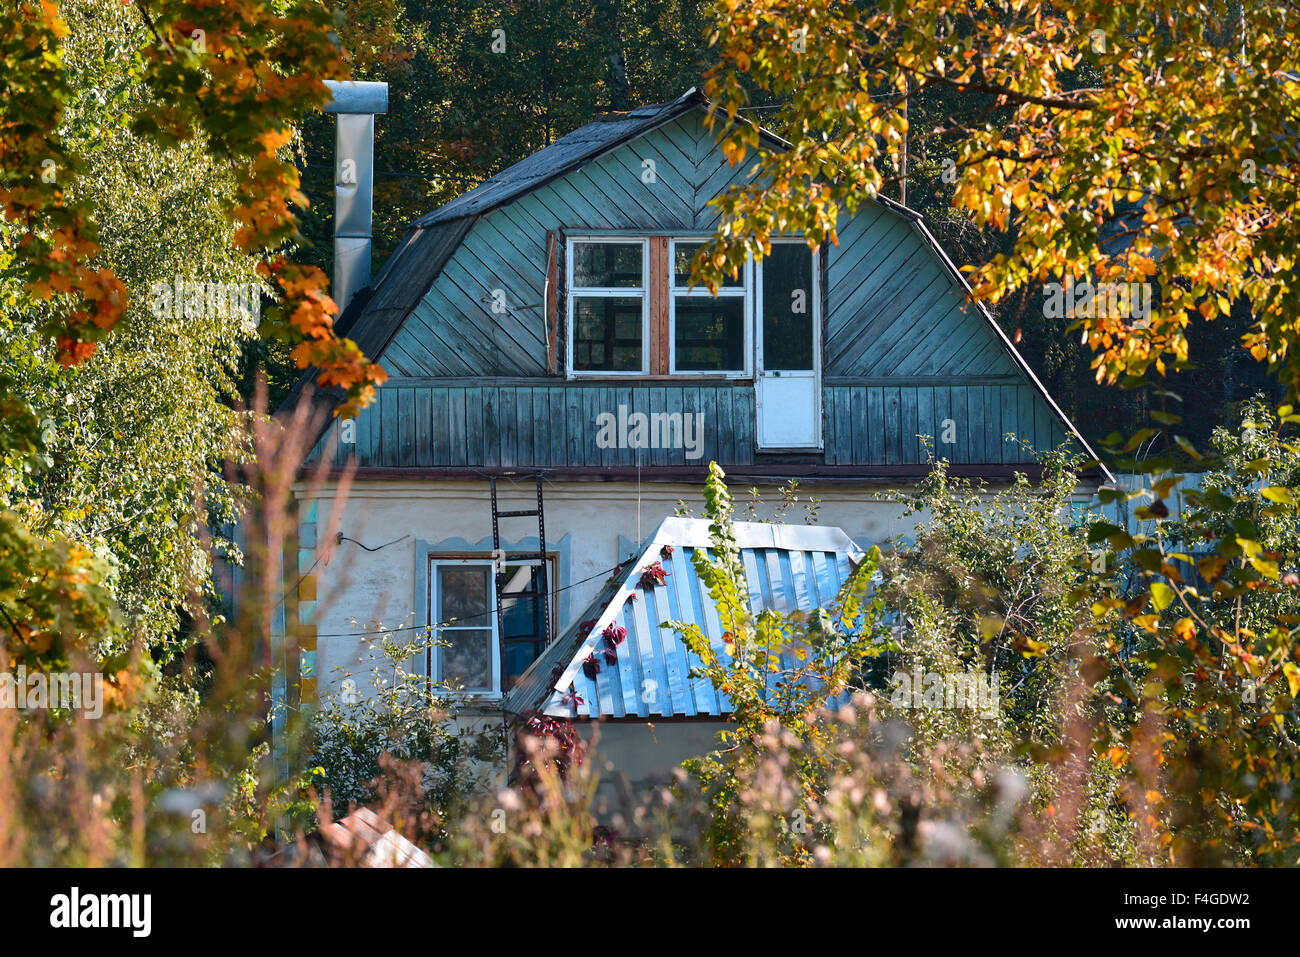 Maison en bois parmi les arbres jaunis - automne paysage rural Banque D'Images